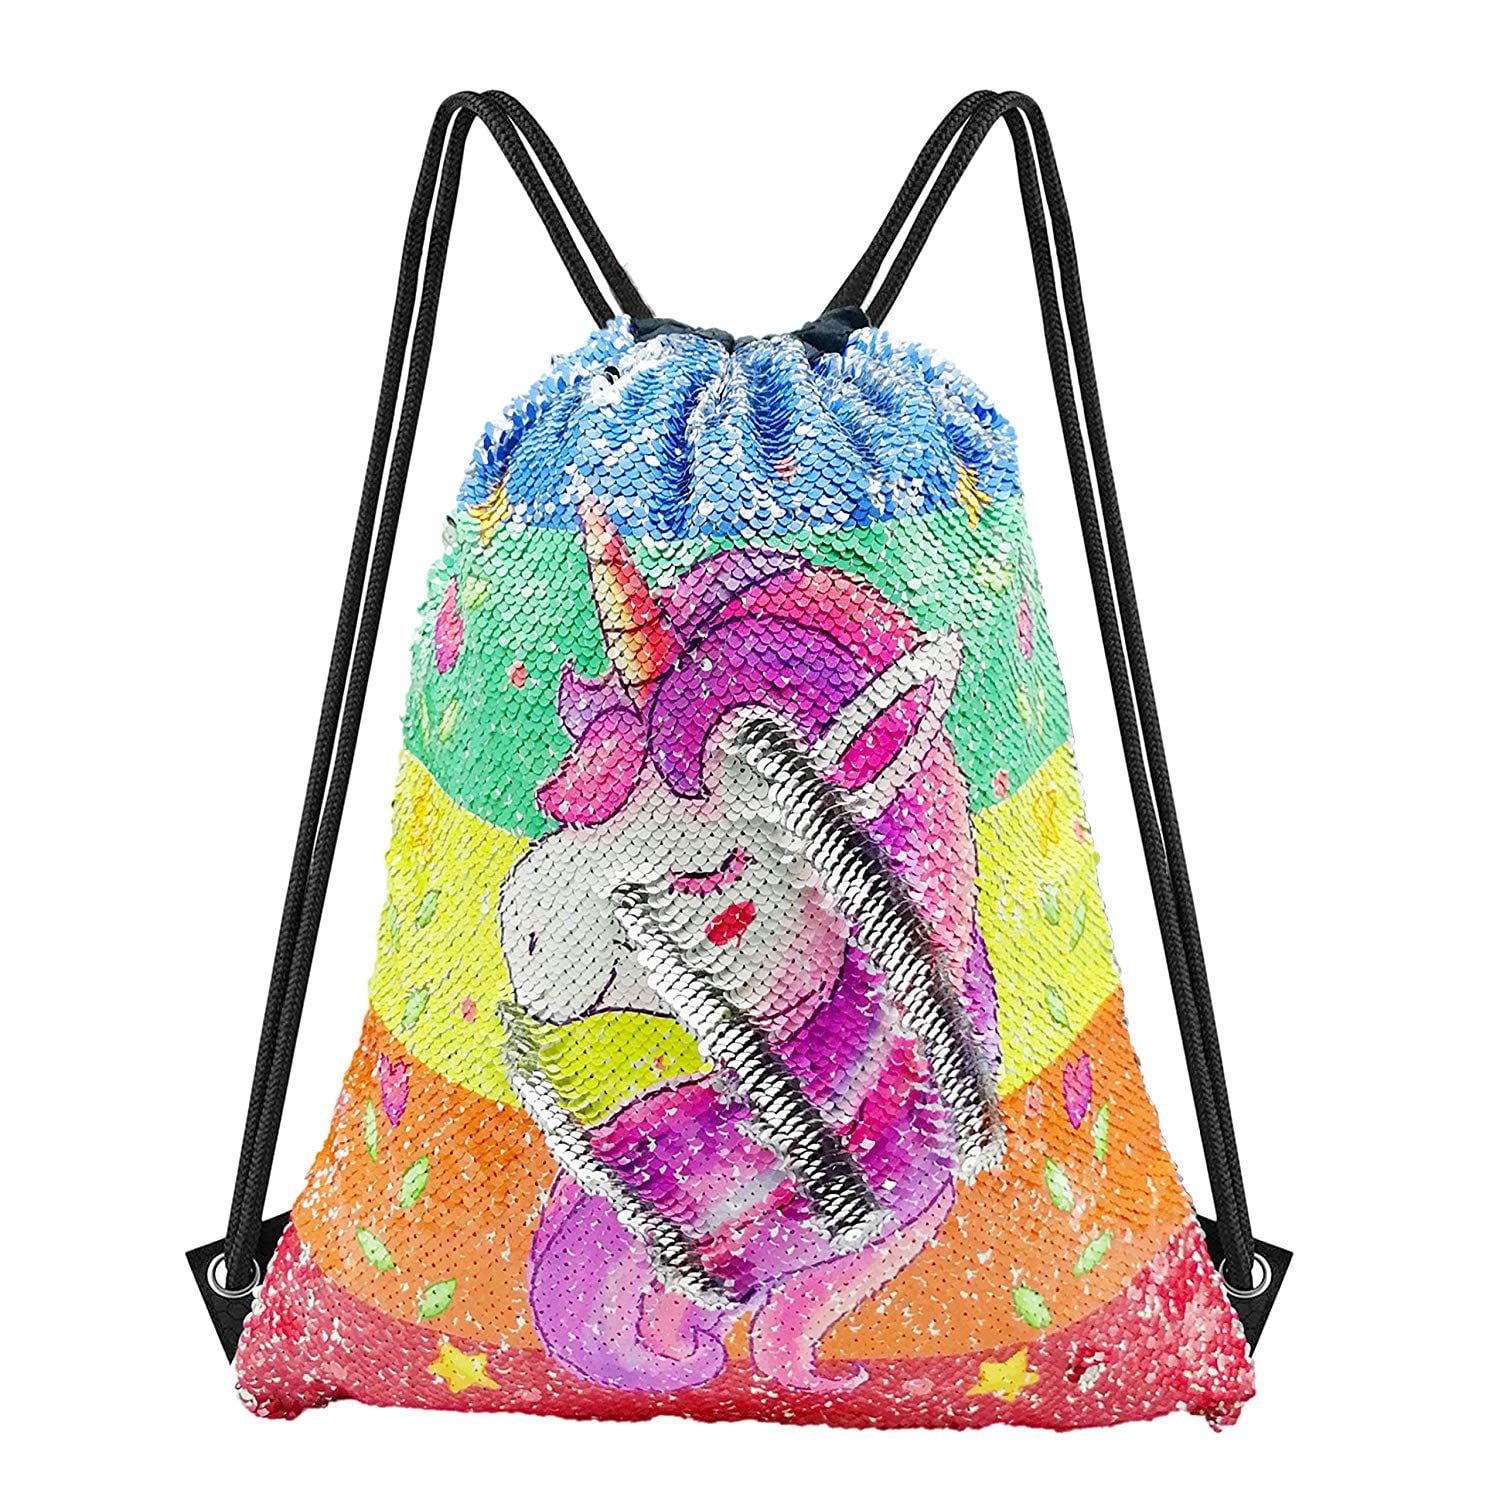 MHJY Sequin Drawstring Bag Mermaid Backpacks Magic Flip Sequin Backpack Reversible Sequin Dance Bag Glitter Gym Sports Travel Backpack for Girls 